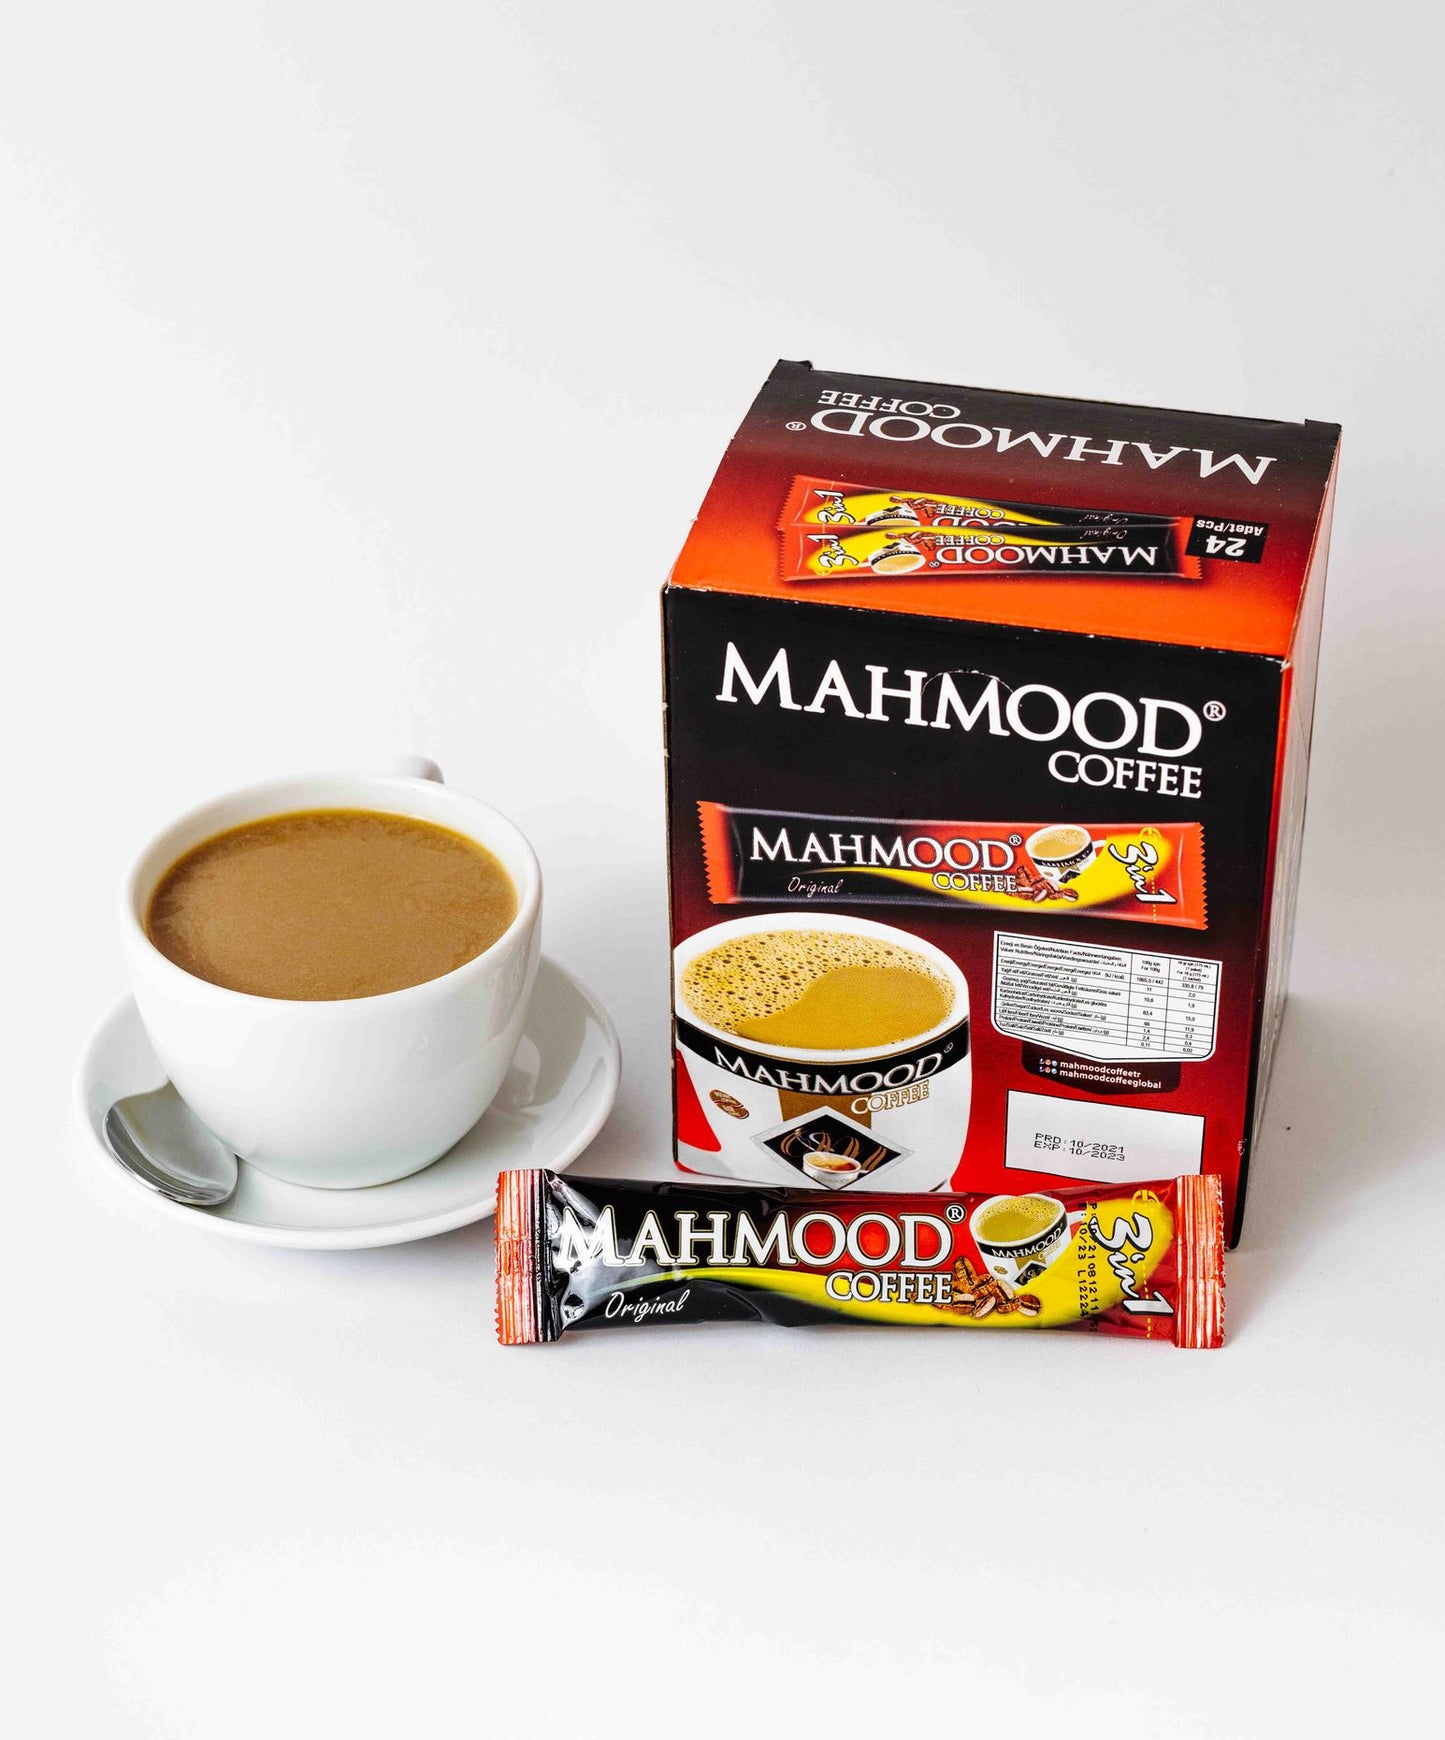 Mahmood Coffee 3in1 stick